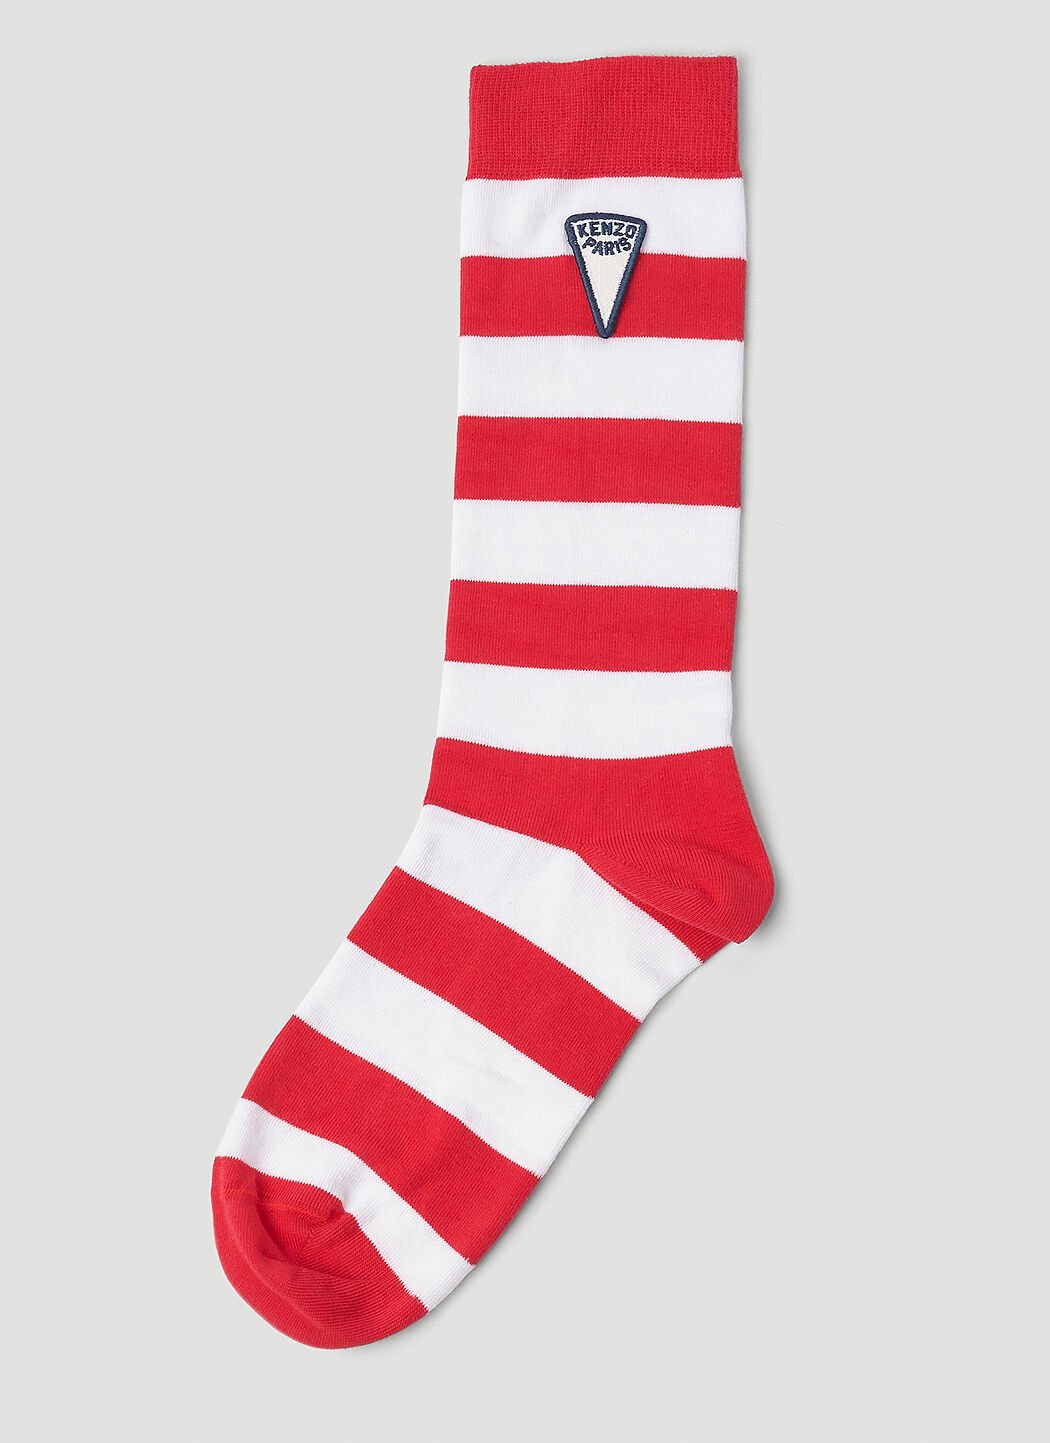 Moncler Grenoble 条纹袜子 红色 mog0153013